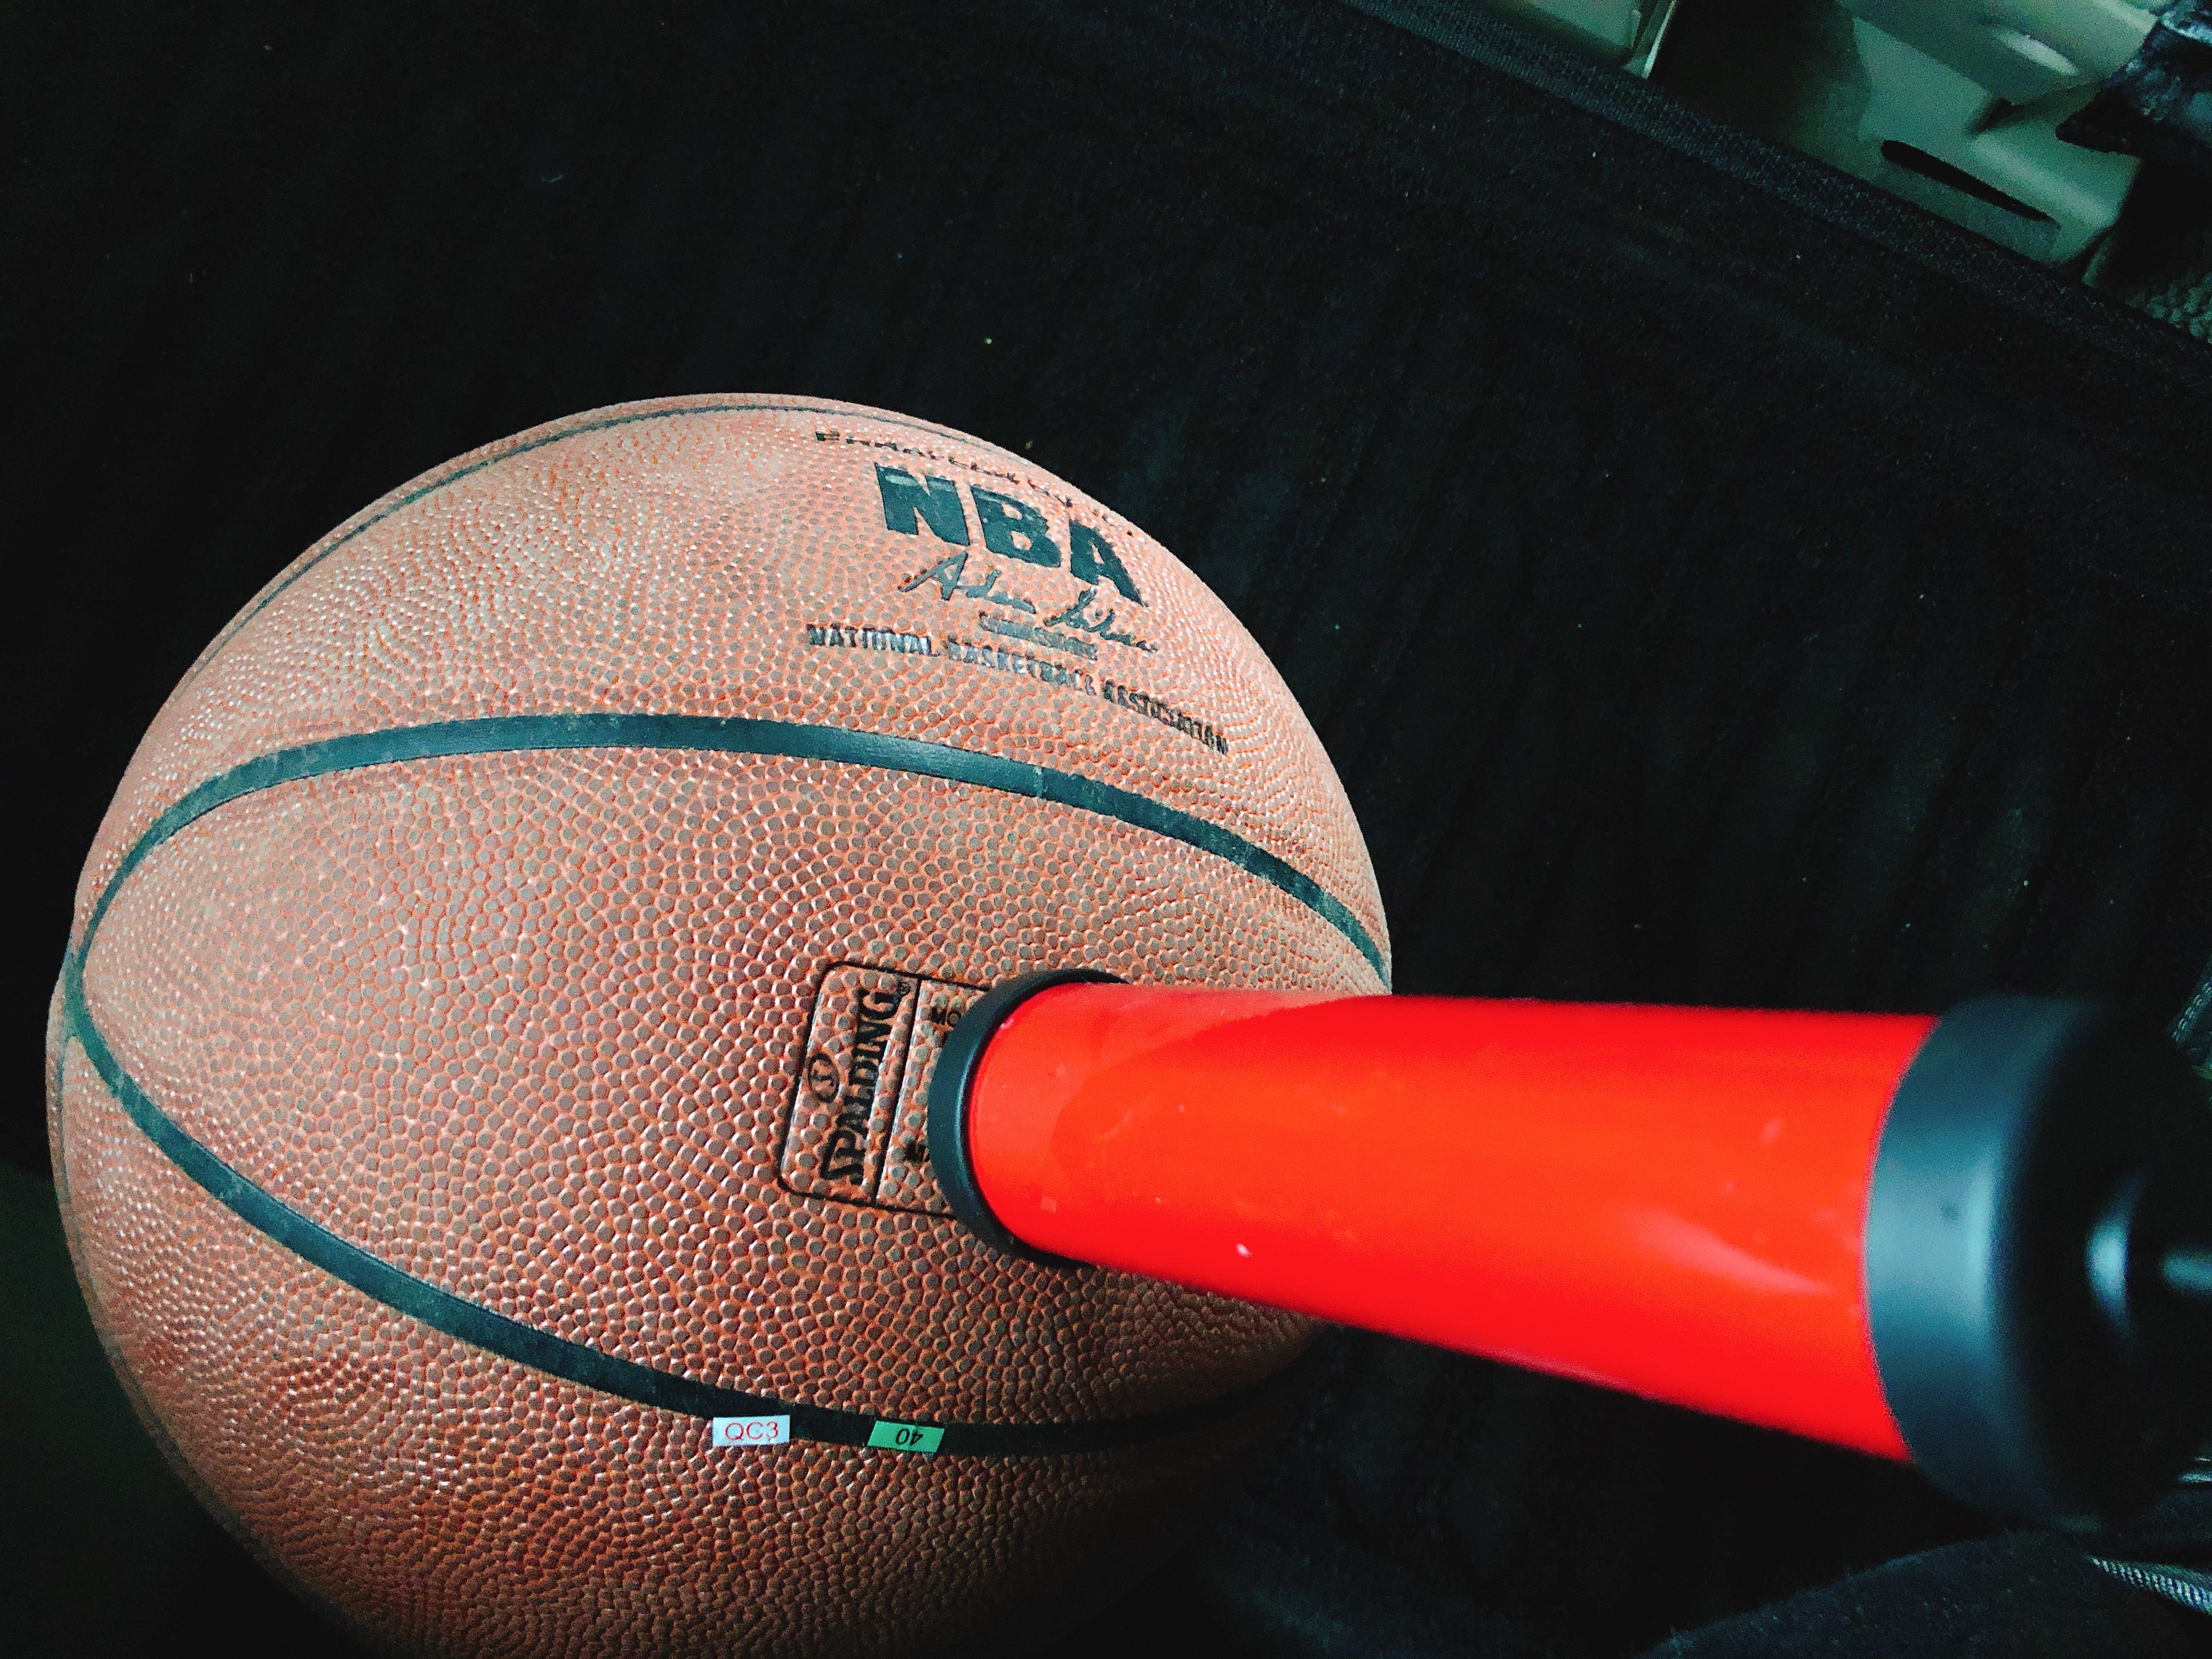 手動ポンプ ボール用空気入れ 空気針ハンドポンプ ニードル サッカー バスケ